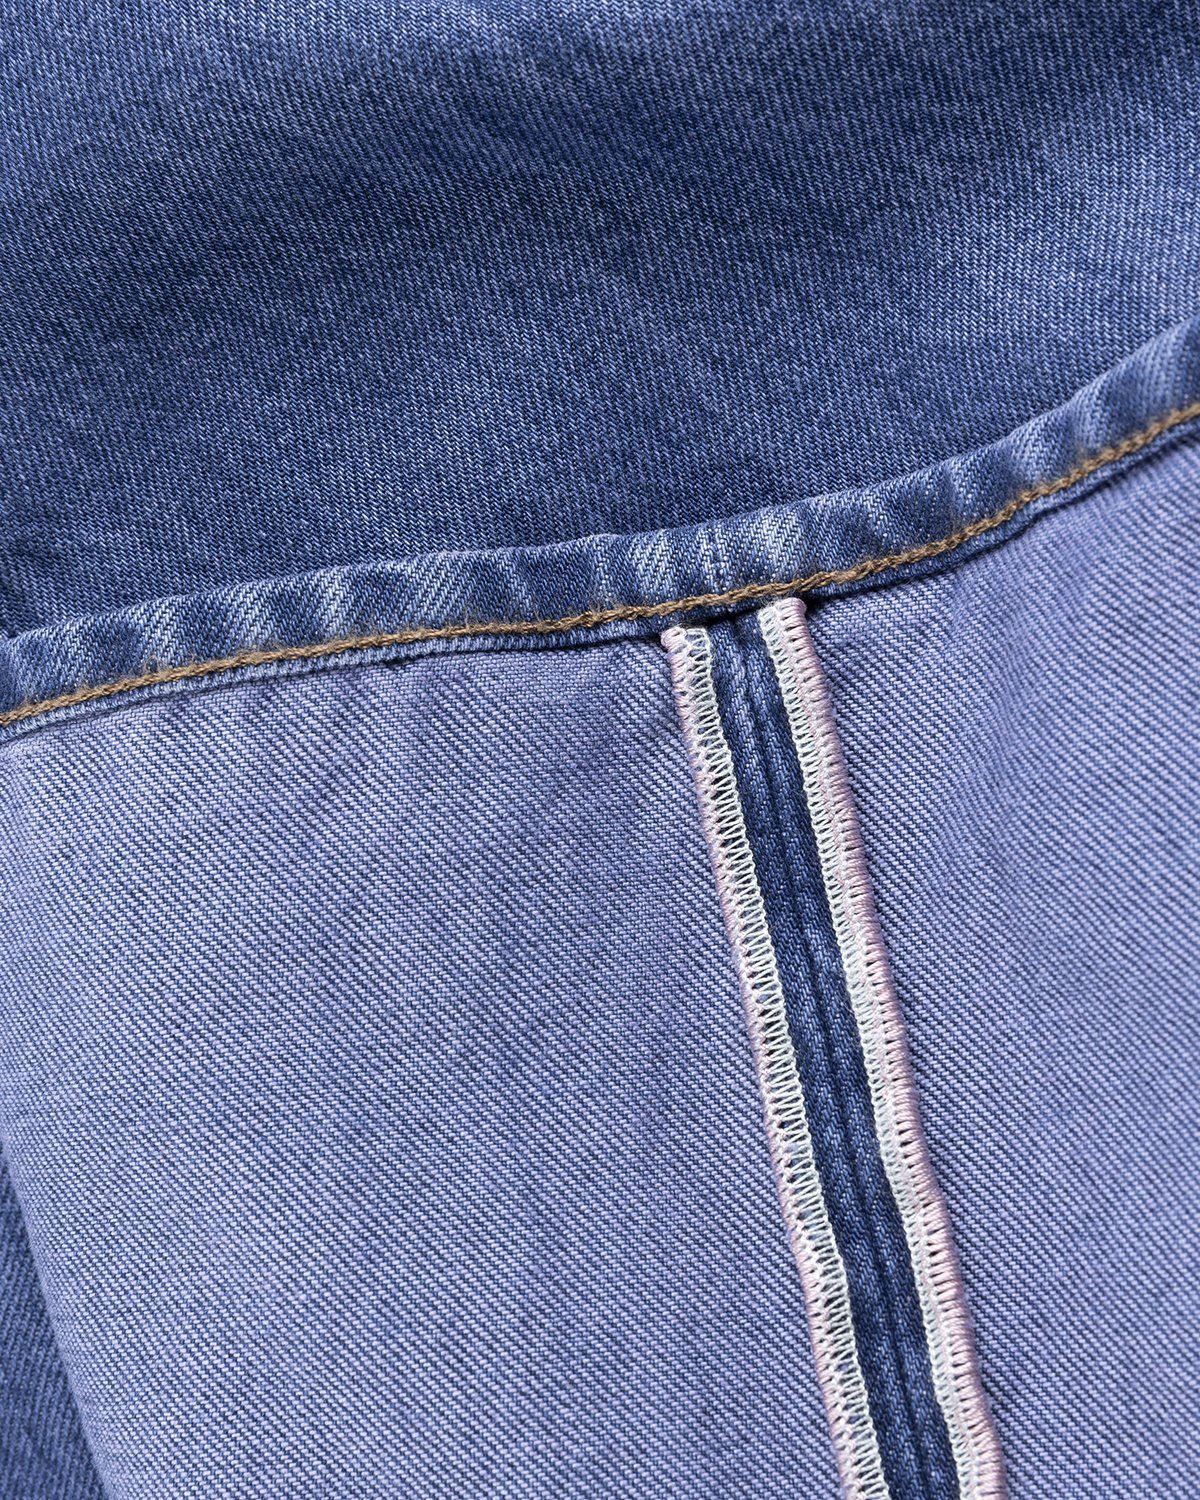 Acne Studios – Brutus 2021M Boot Cut Jeans Blue - Denim - Blue - Image 6